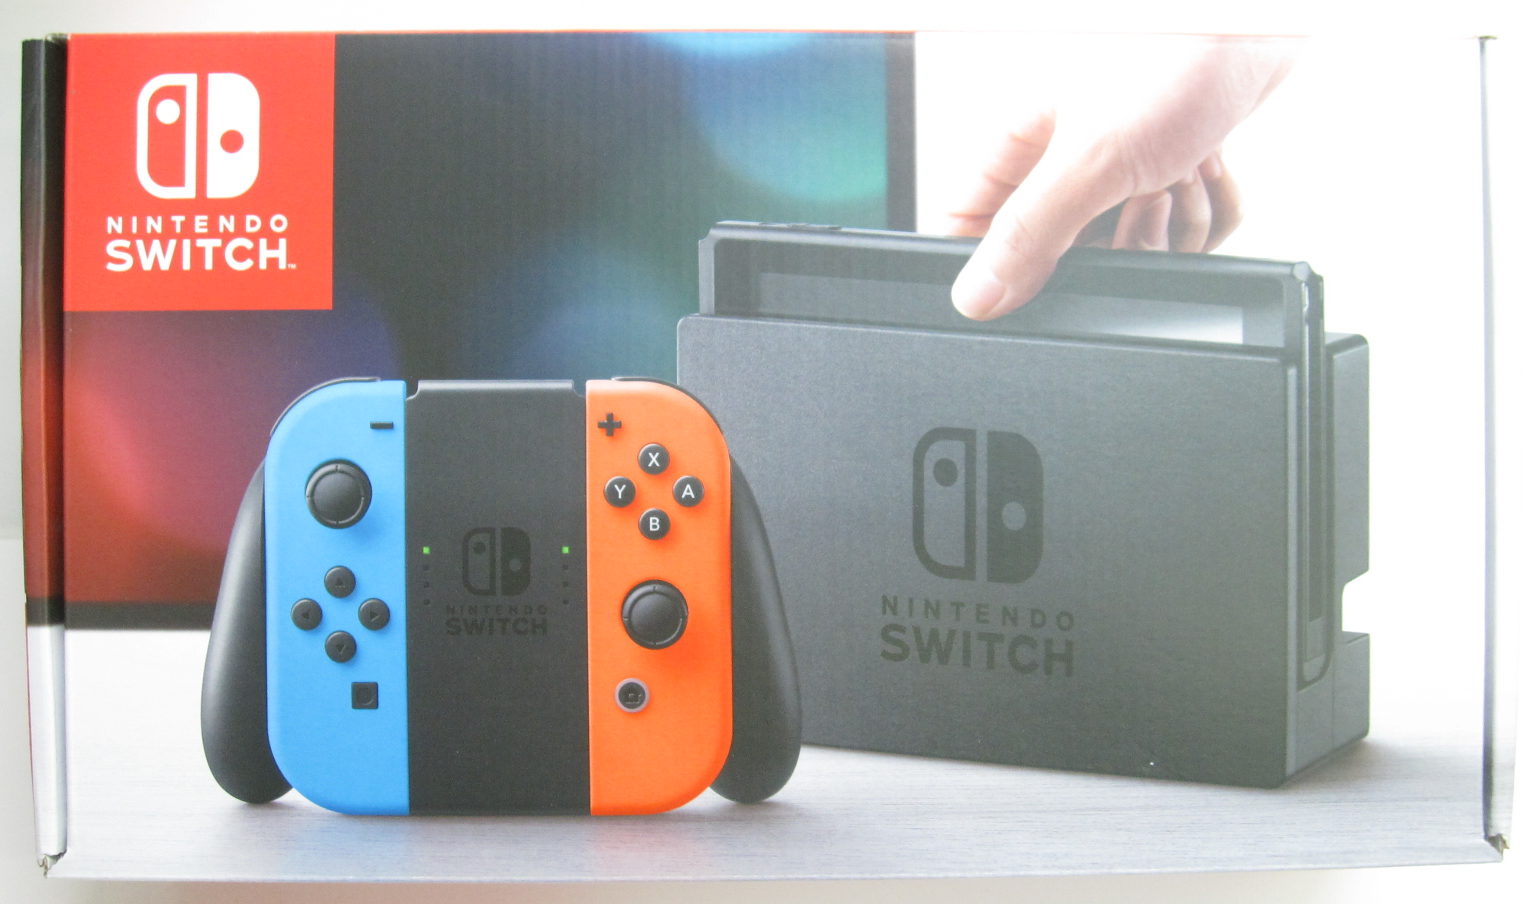 Nintendo Switch 本体 (ニンテンドースイッチ) 【Joy-Con (L) ネオンブルー/(R) ネオンレッド】を売って頂きまし